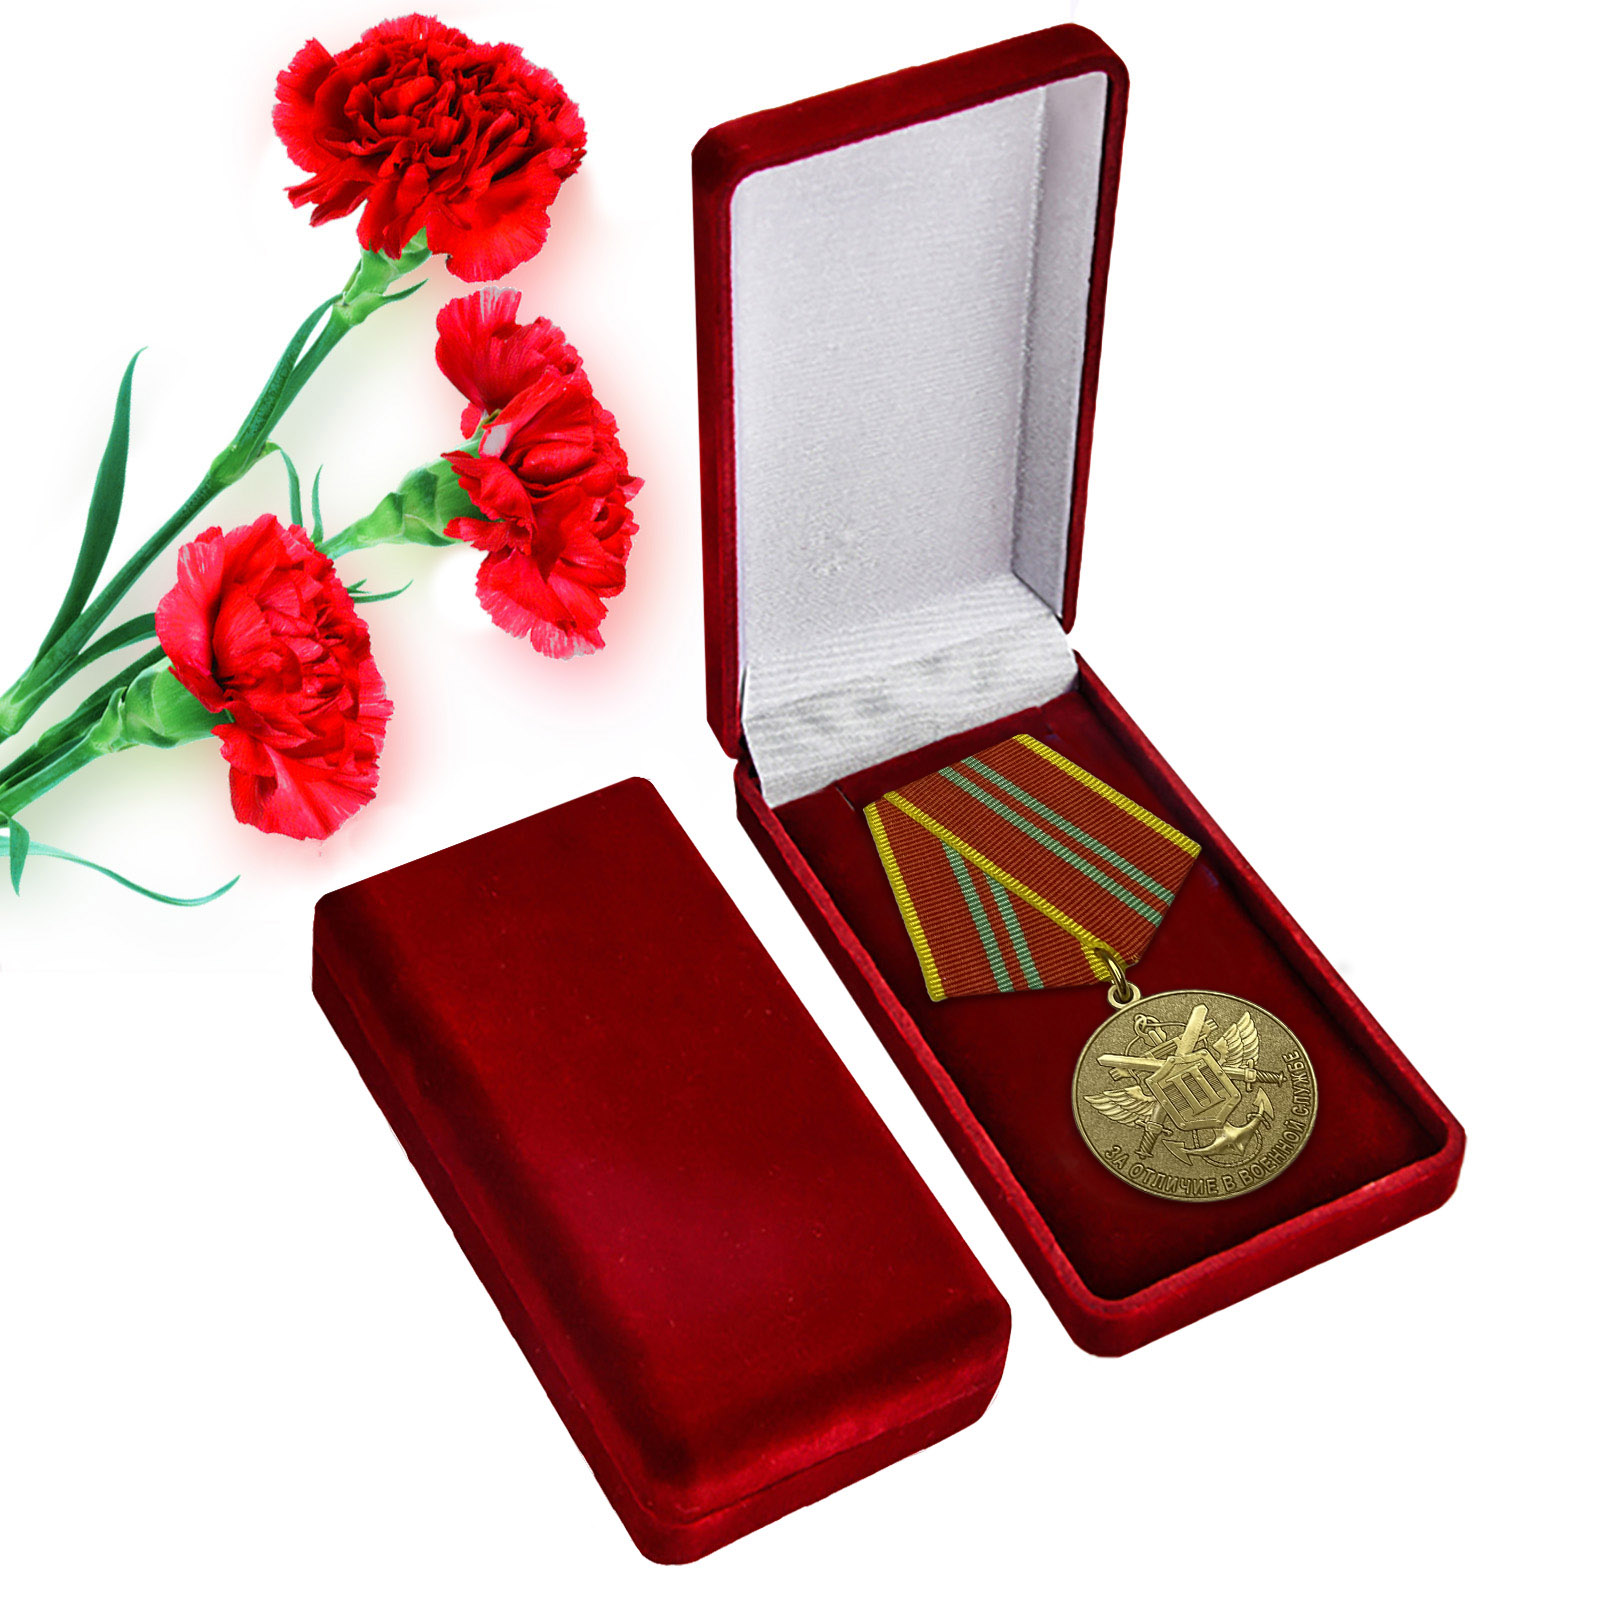 Купить медаль МЧС РФ "За отличие в военной службе" 2 степени в подарок